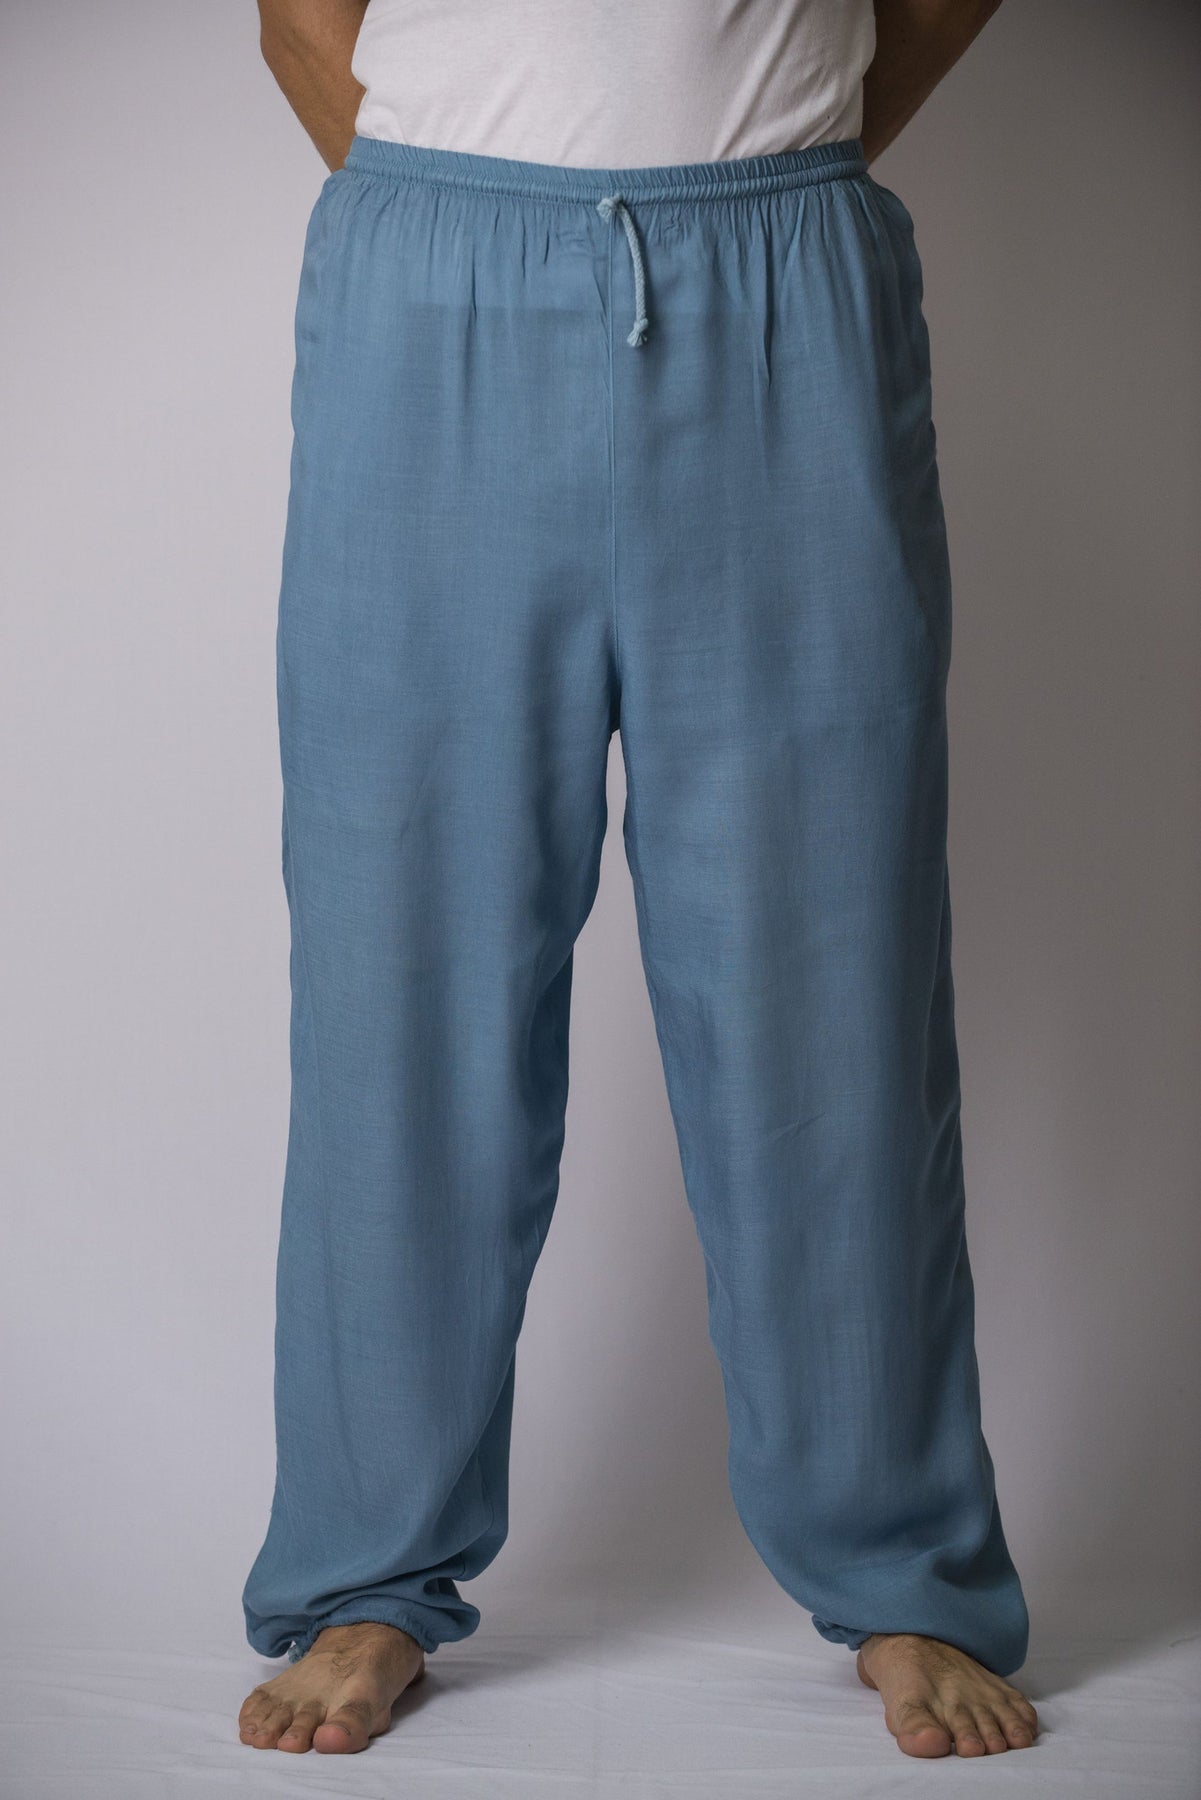 Solid Color Drawstring Men's Yoga Massage Pants in Blue Gray – Harem Pants